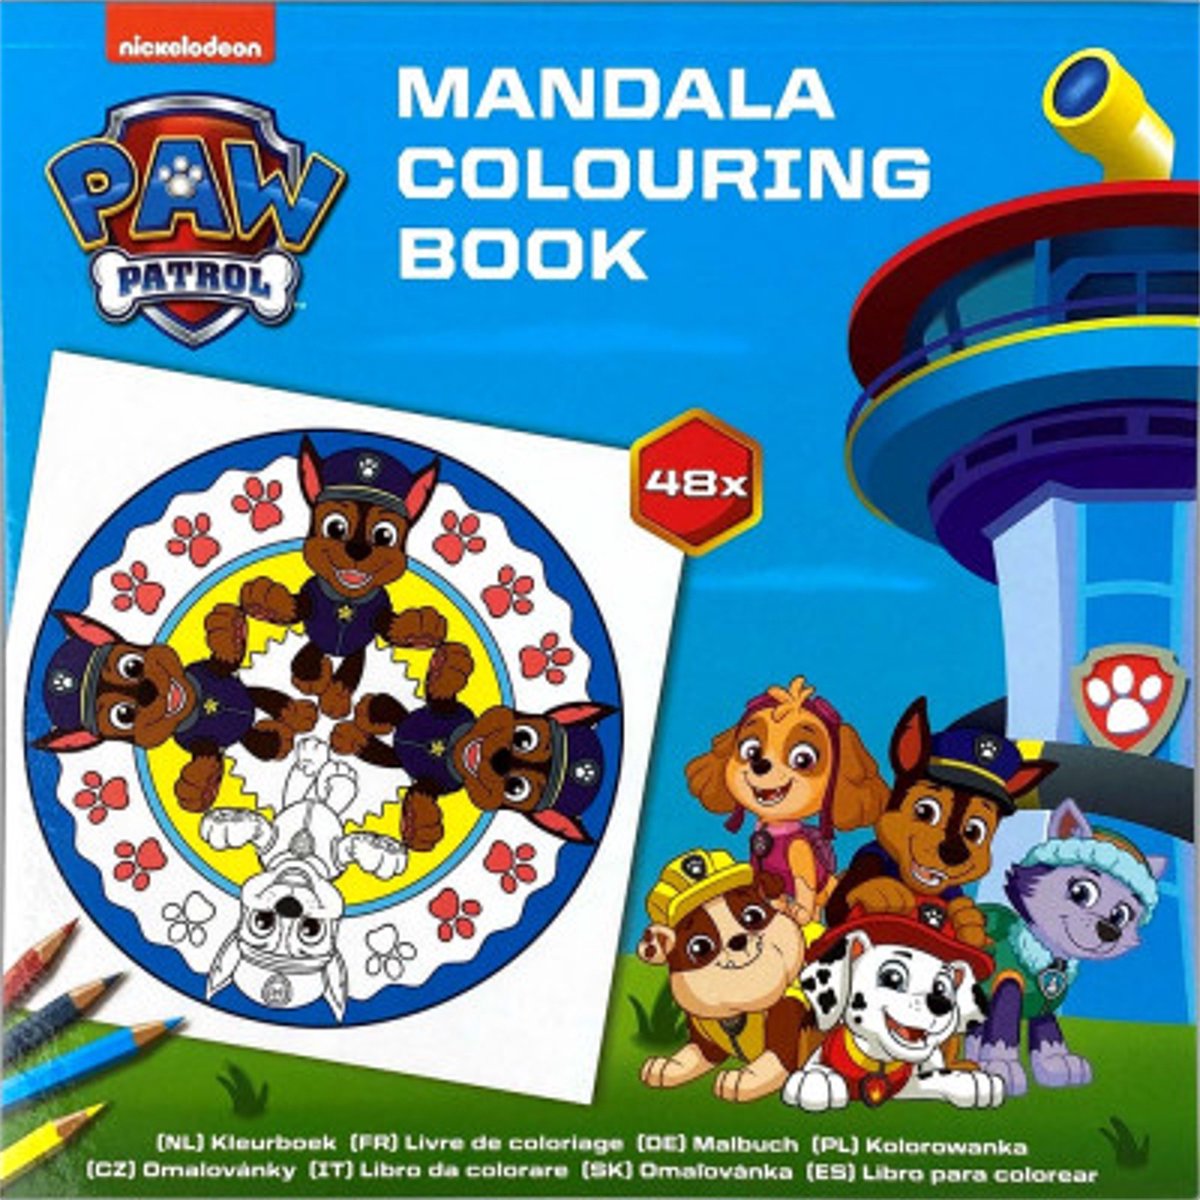 Paw patrol Mandala kleurboek voor kinderen 48 kleurplaten  - Mandala - Mandala paw patrol